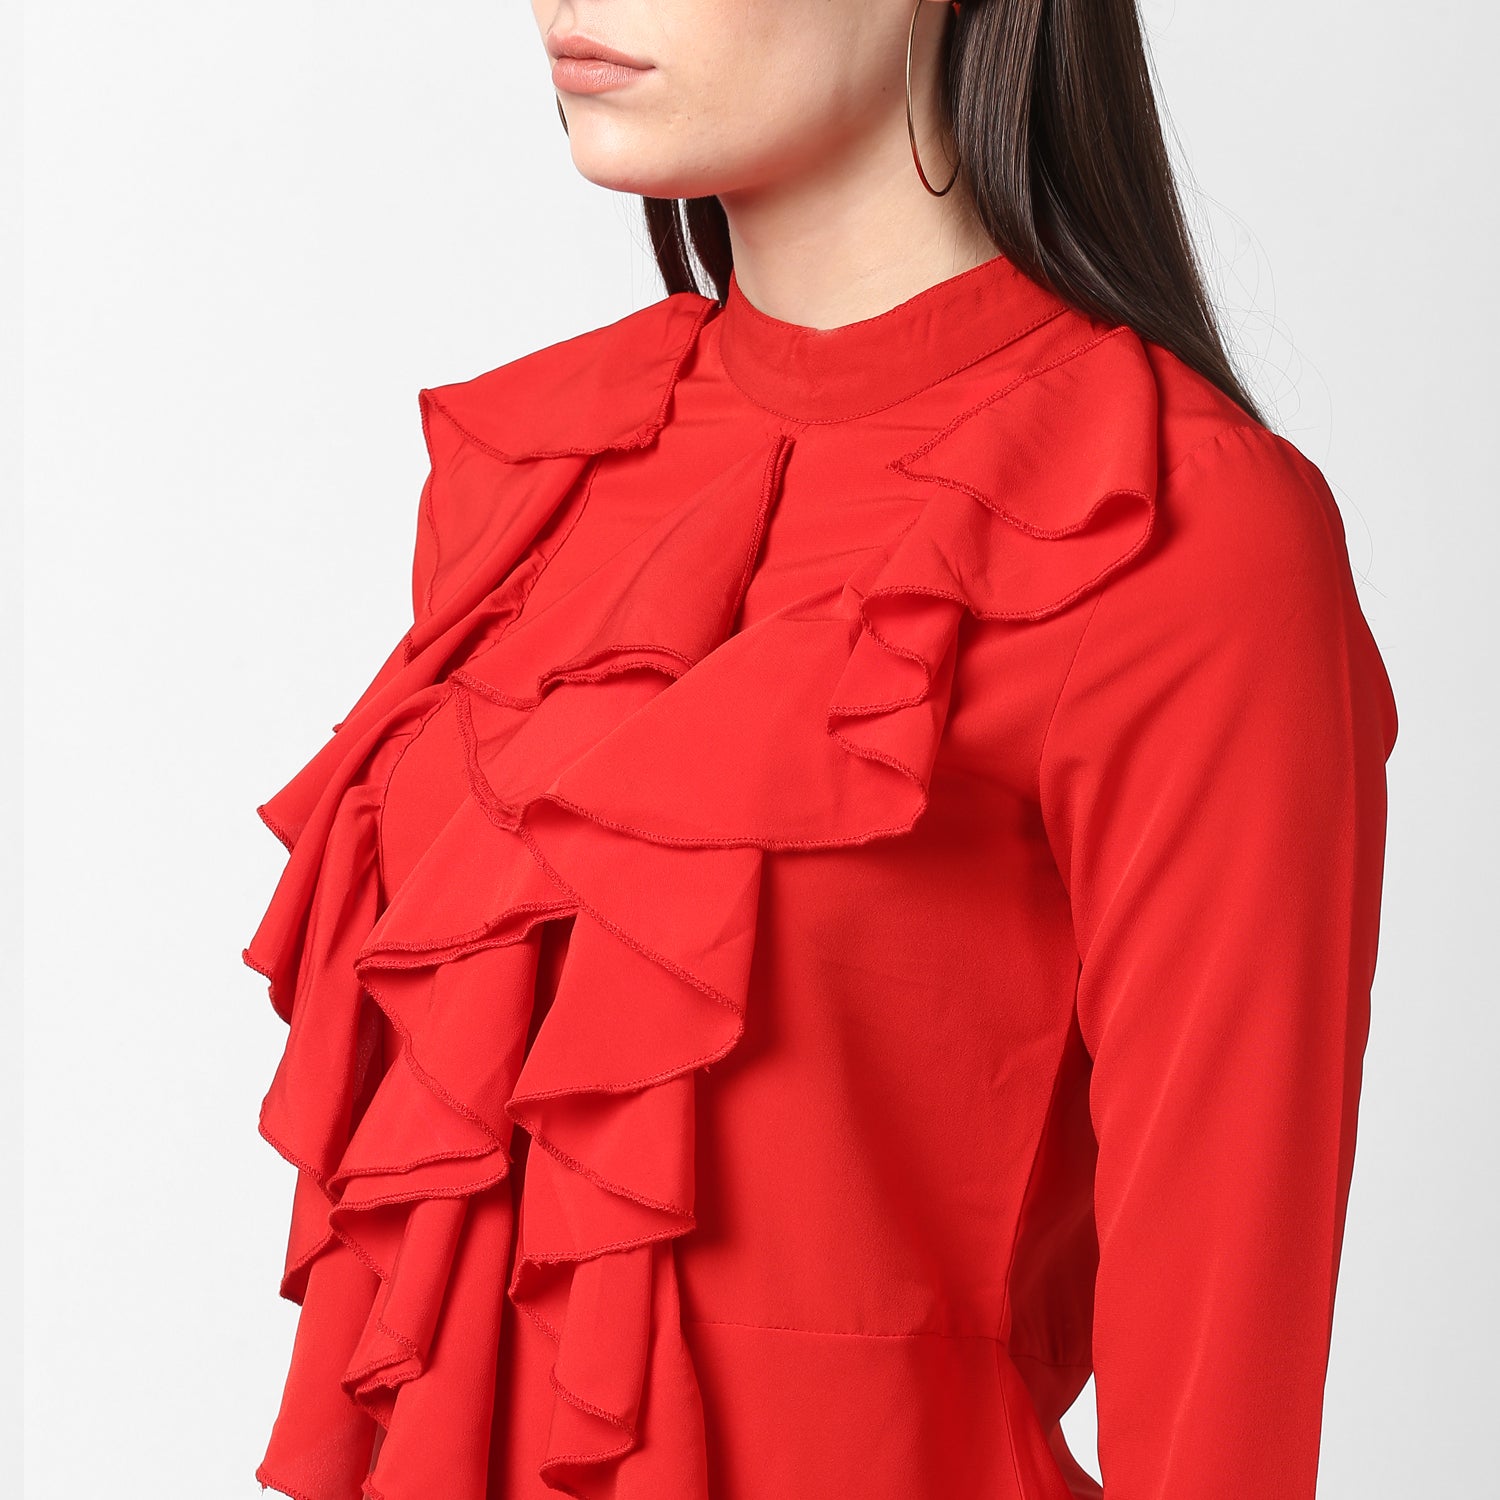 Women's Red Front Ruffle Bell Sleeve Dress - StyleStone